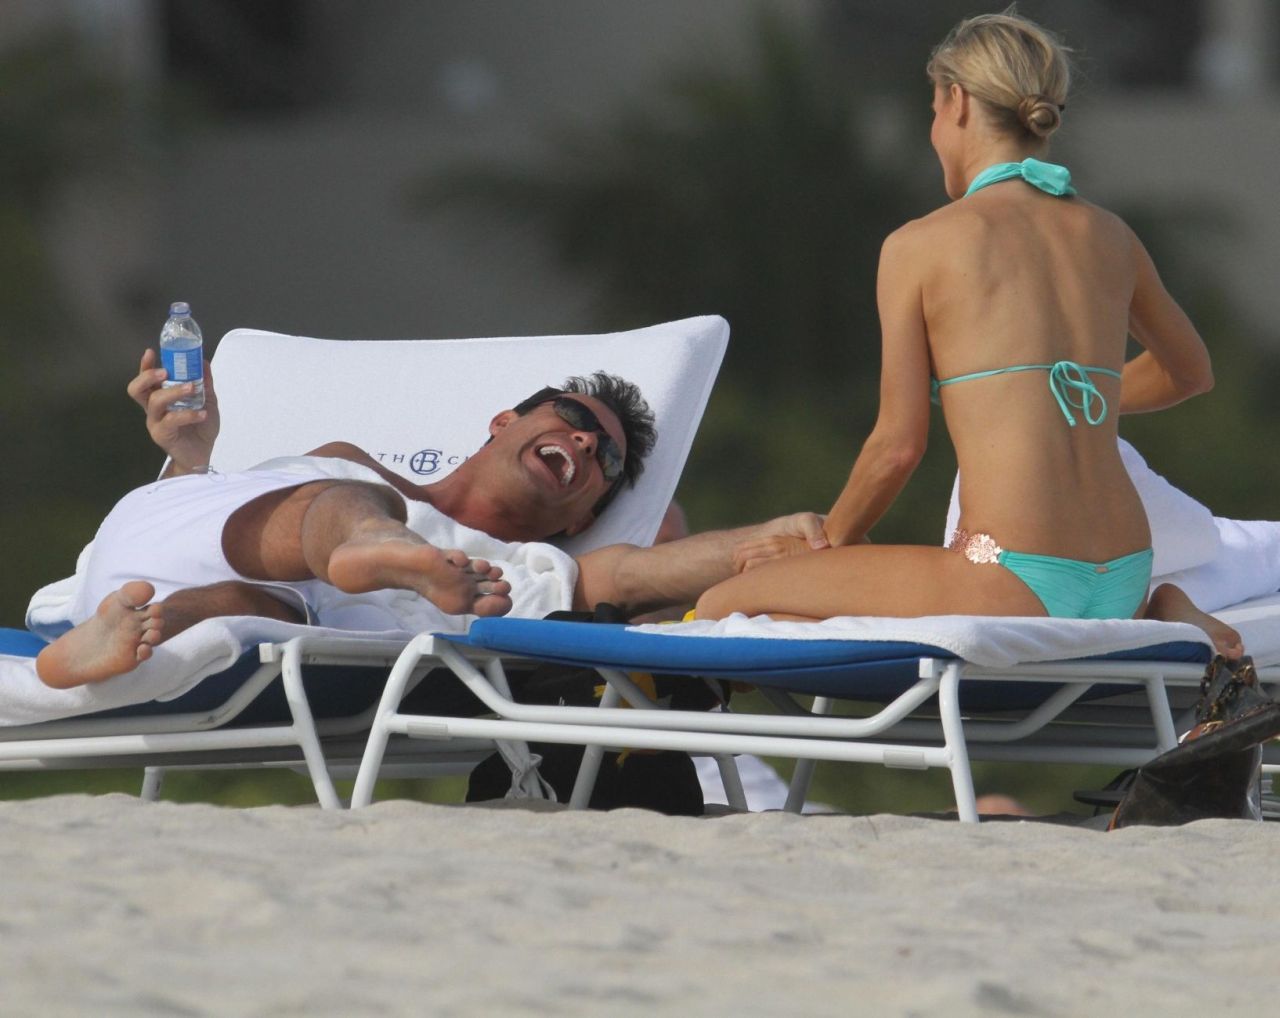 Joanna Krupa - polska modelka w bikini na plaży w Miami